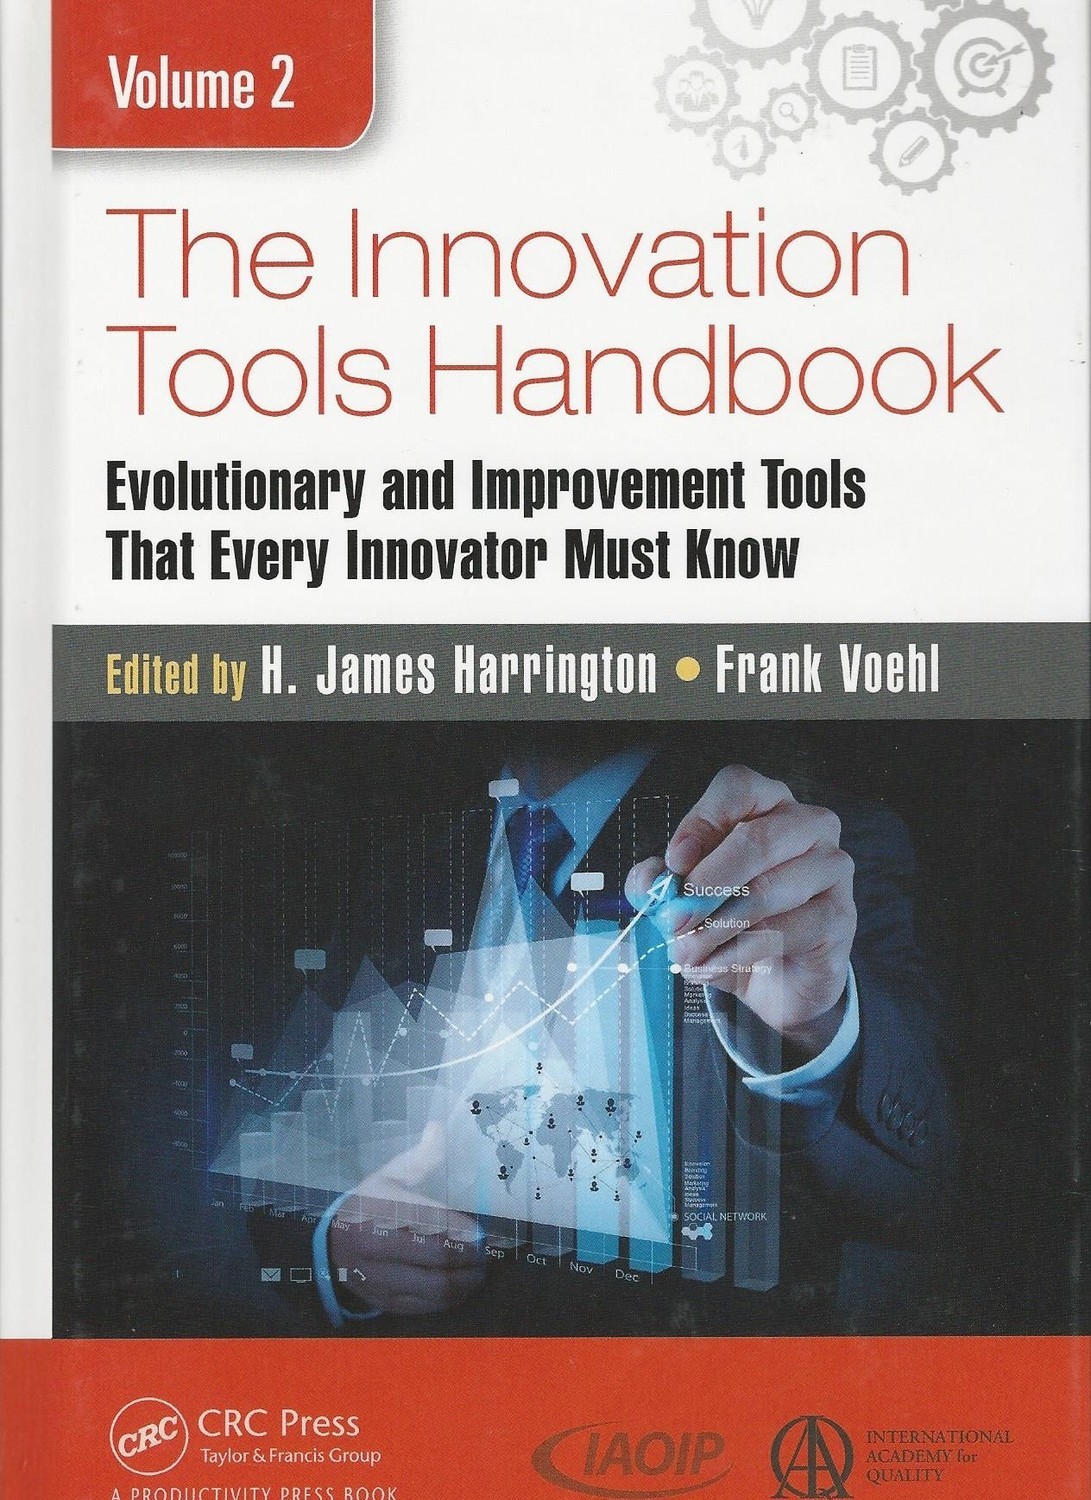 The Innovation Tools Handbook